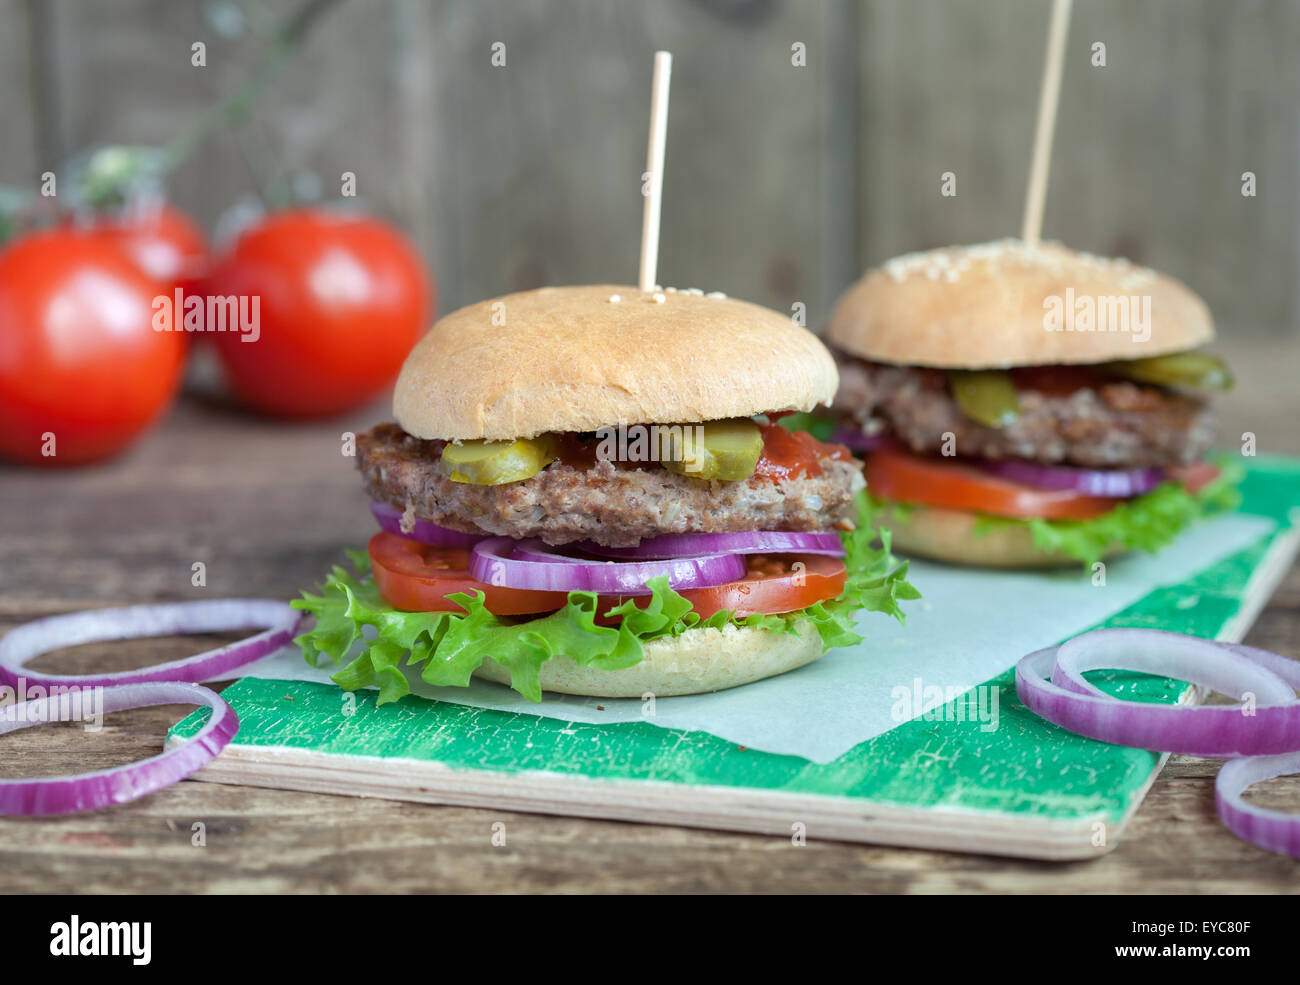 Hamburgers maison avec une salade verte, tomate, oignon rouge, boeuf, concombres et petit pain de blé entier sur une table en bois Banque D'Images